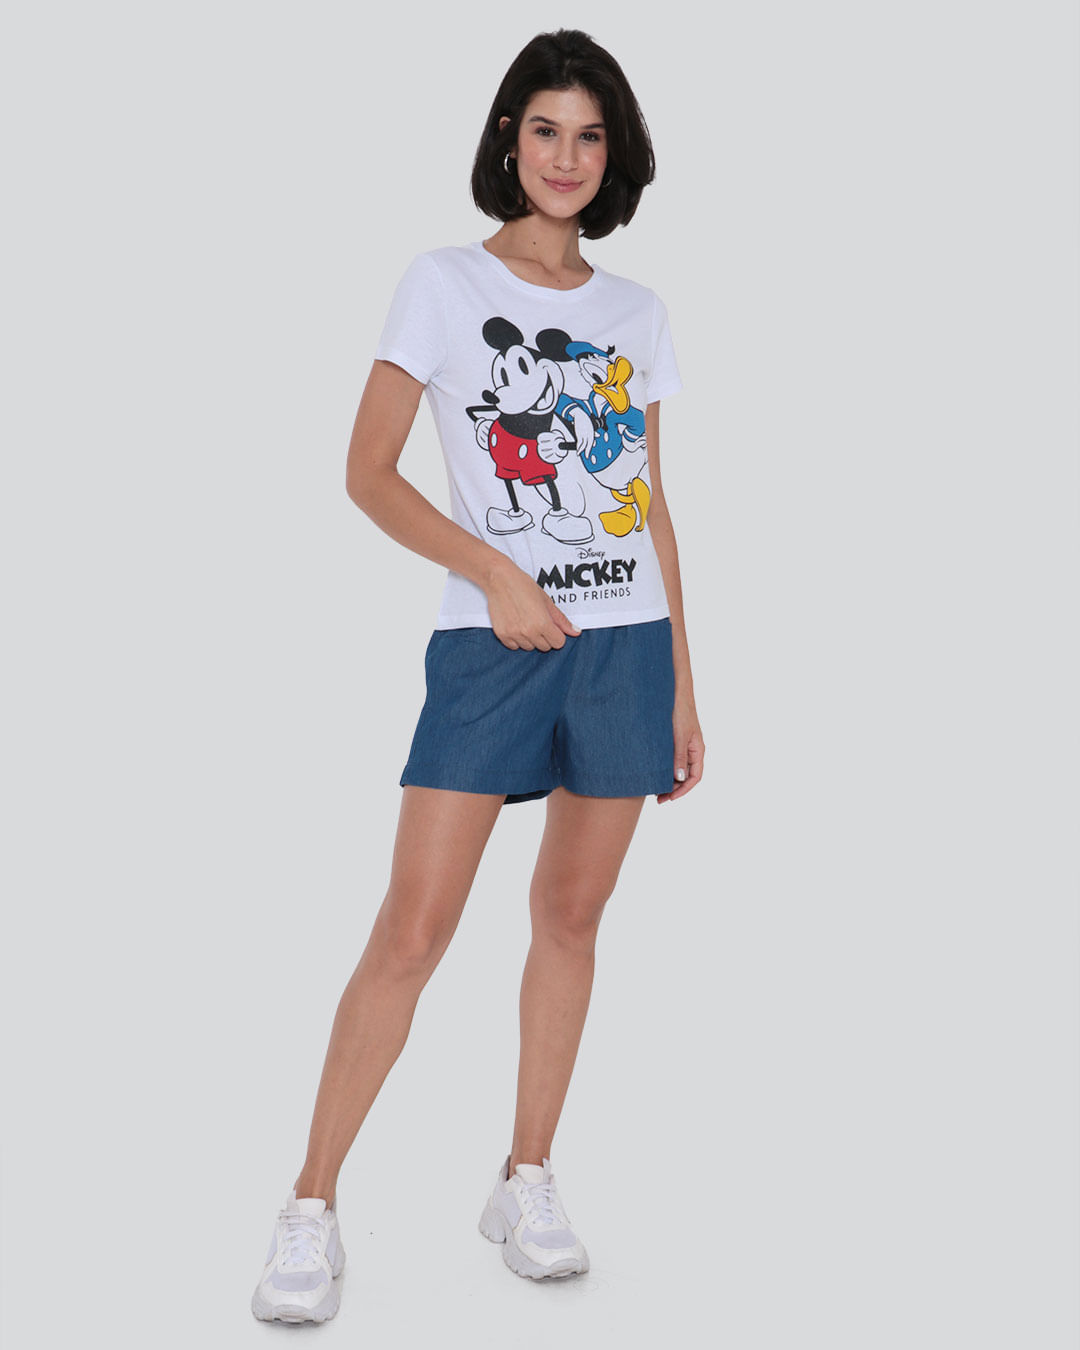 Camiseta Feminina Mickey e Donald Disney Branca